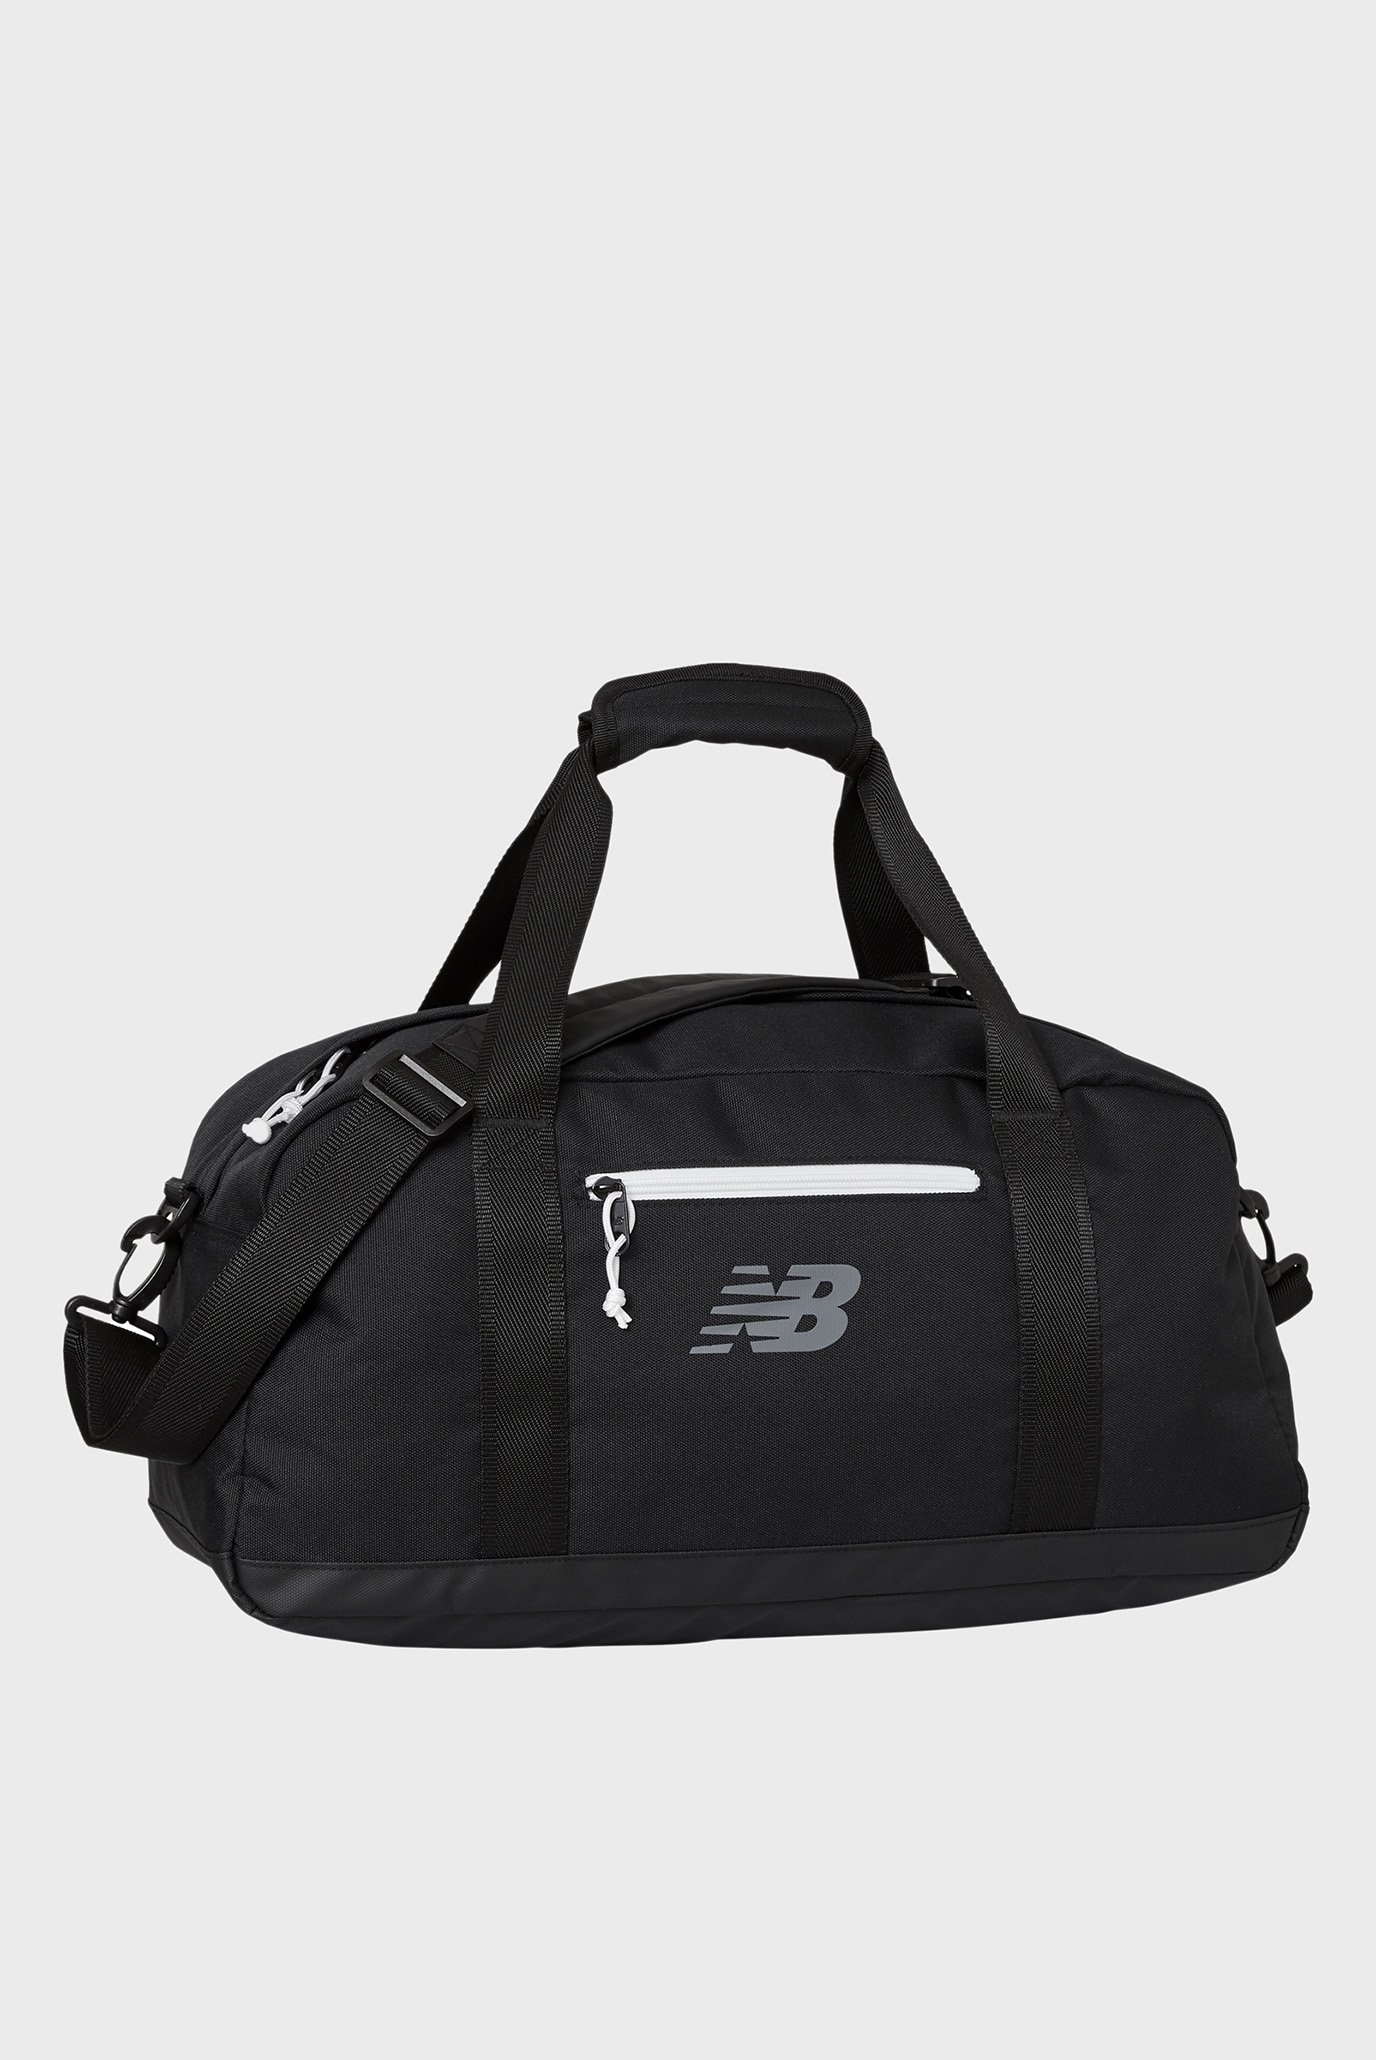 Чорна спортивна сумка Duffel bag 1